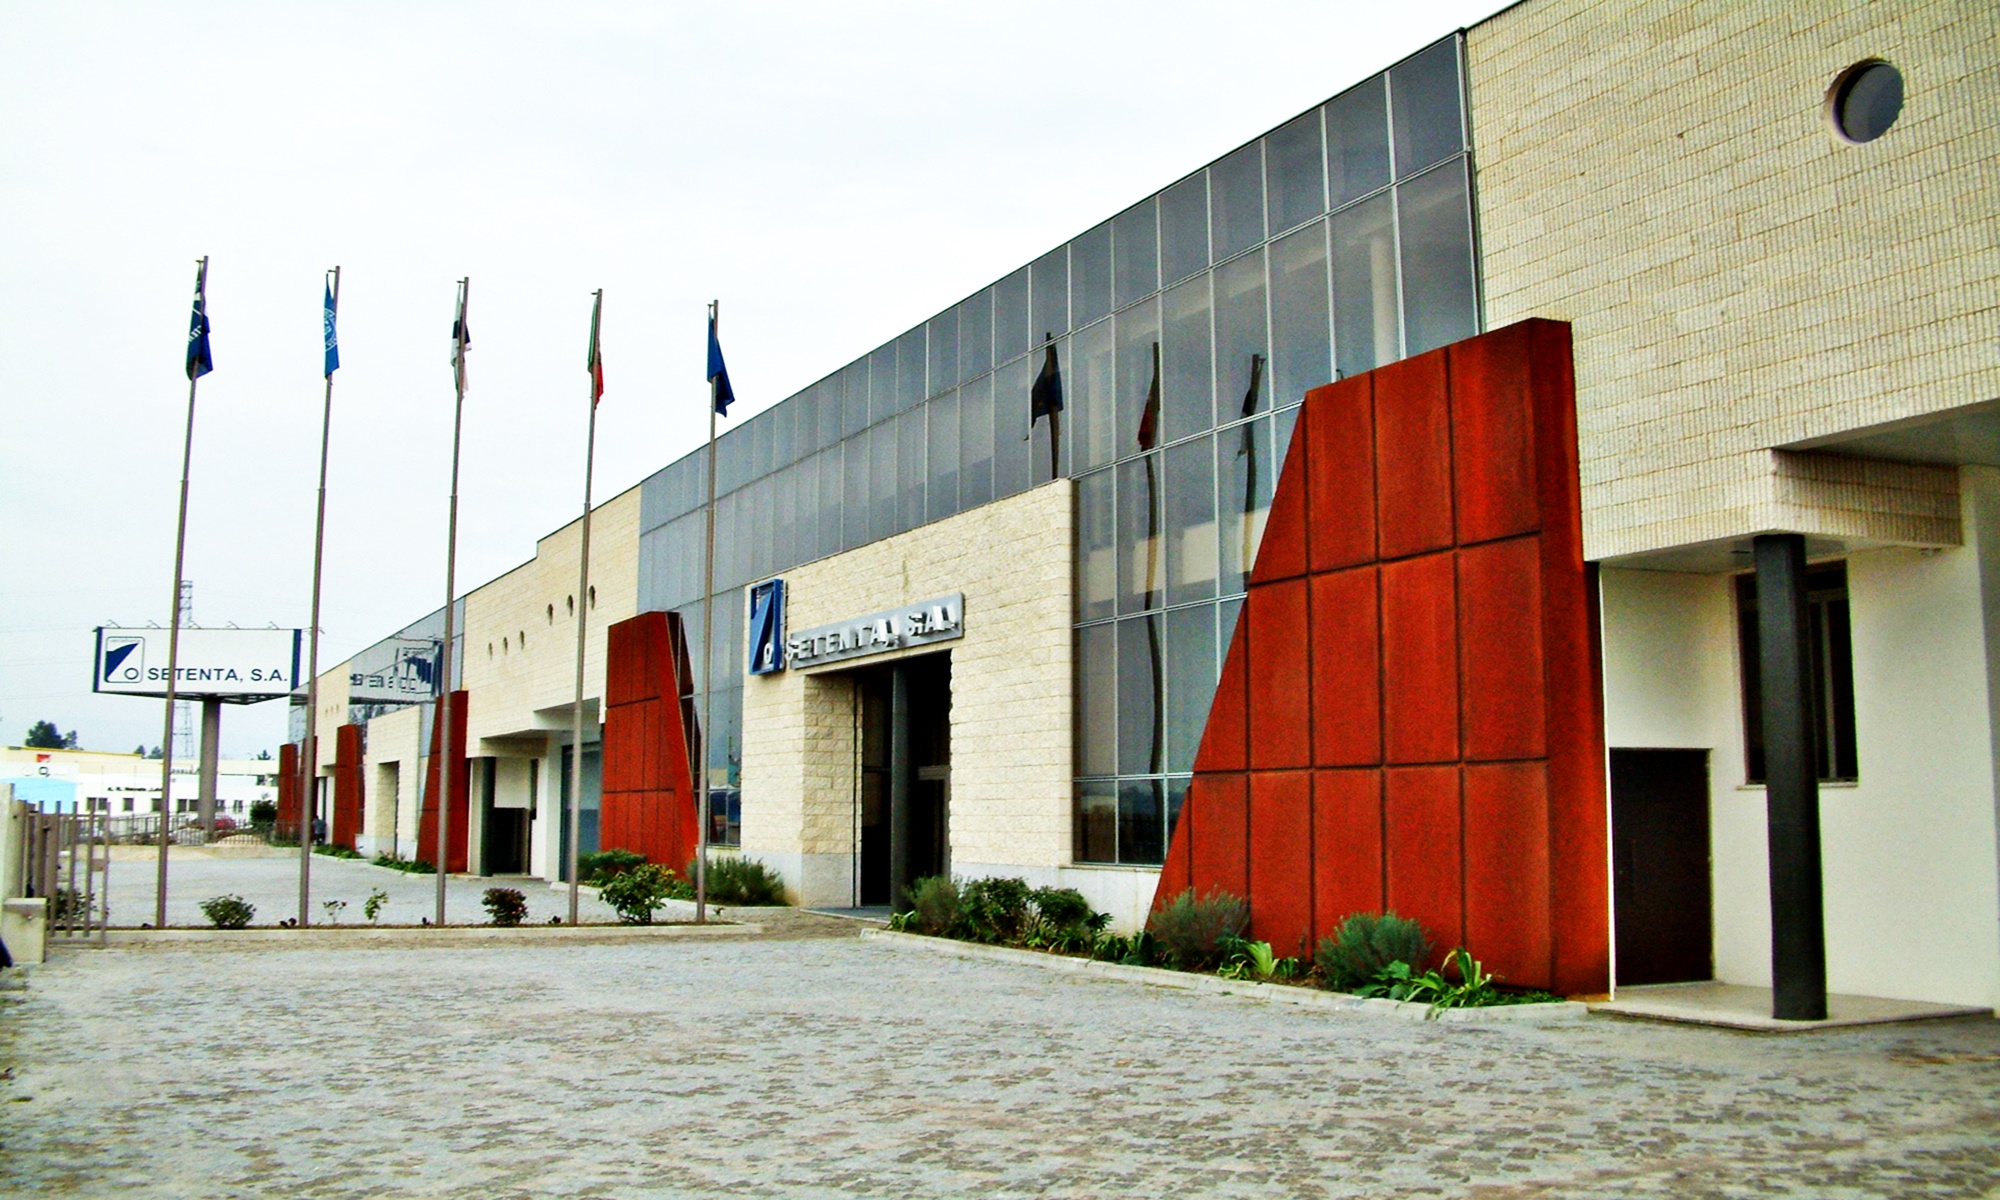 Instalações d'O Setenta - Parque Industrial de Adaúfe 2002